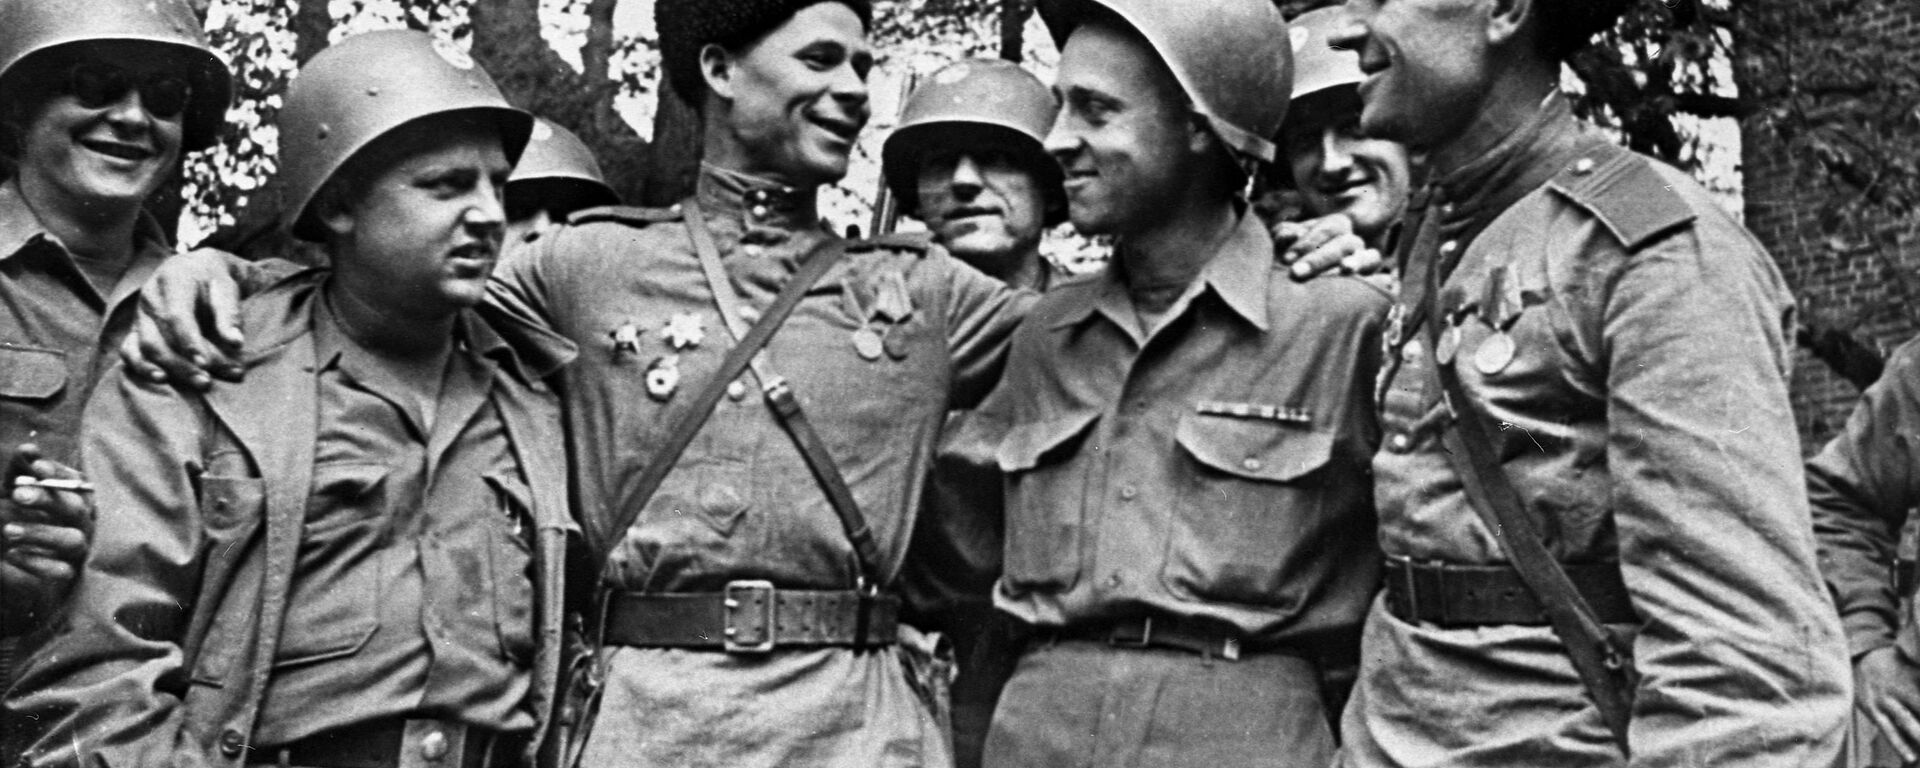 Encuentro entre soldados estadounidenses y soviéticos en el río Elba - Sputnik Mundo, 1920, 10.04.2021